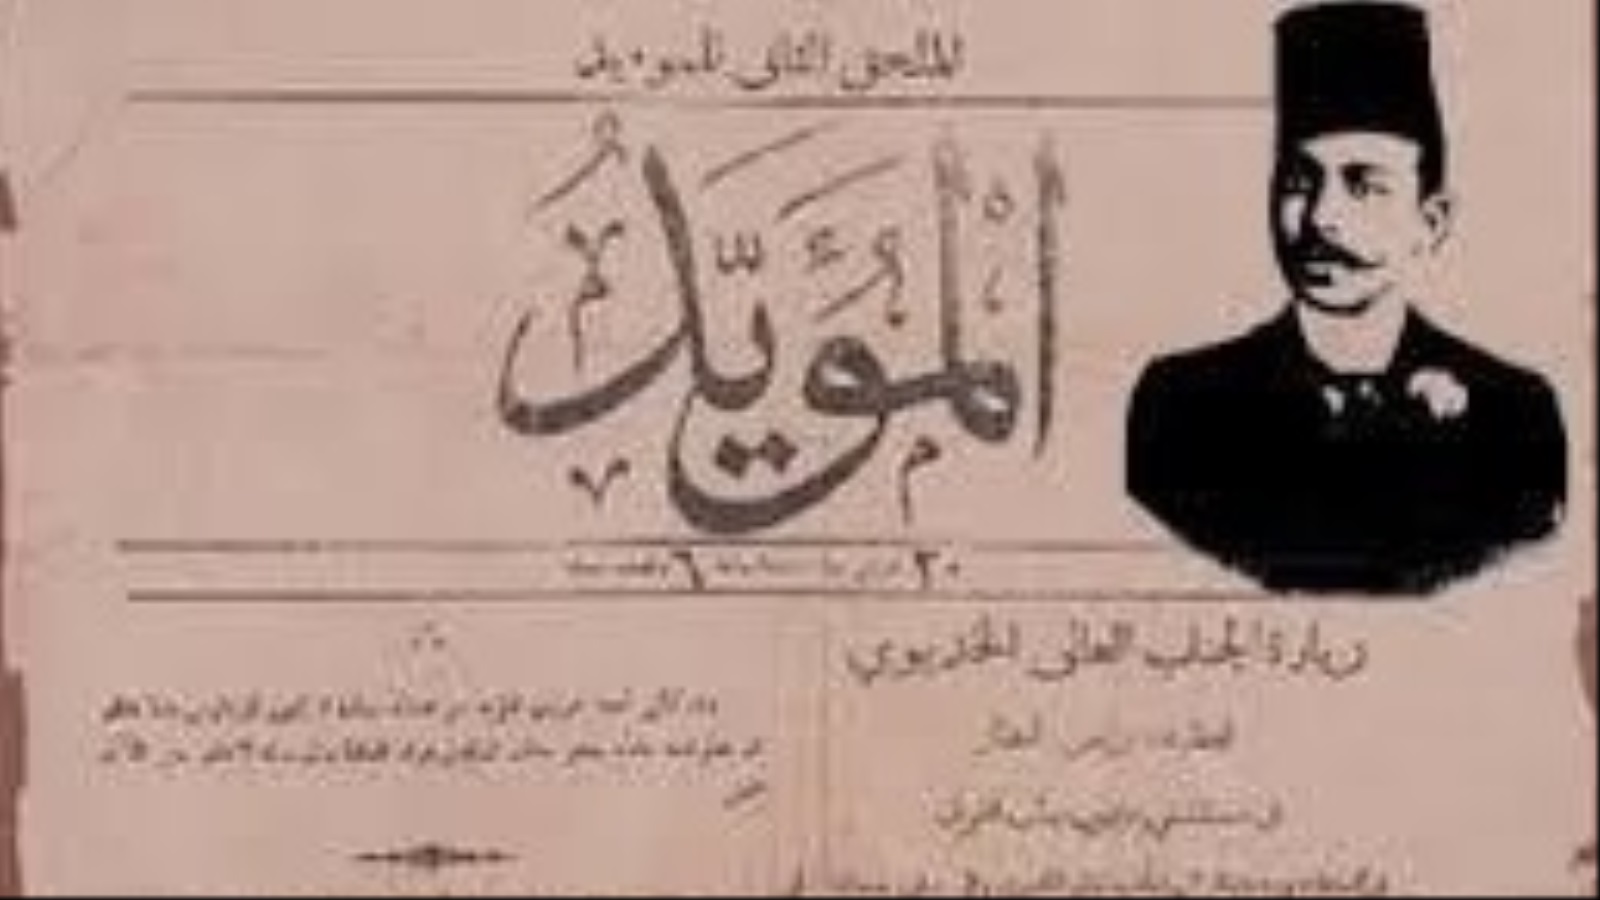 صحيفة المؤيد التي أنشأها الشيخ علي يوسف